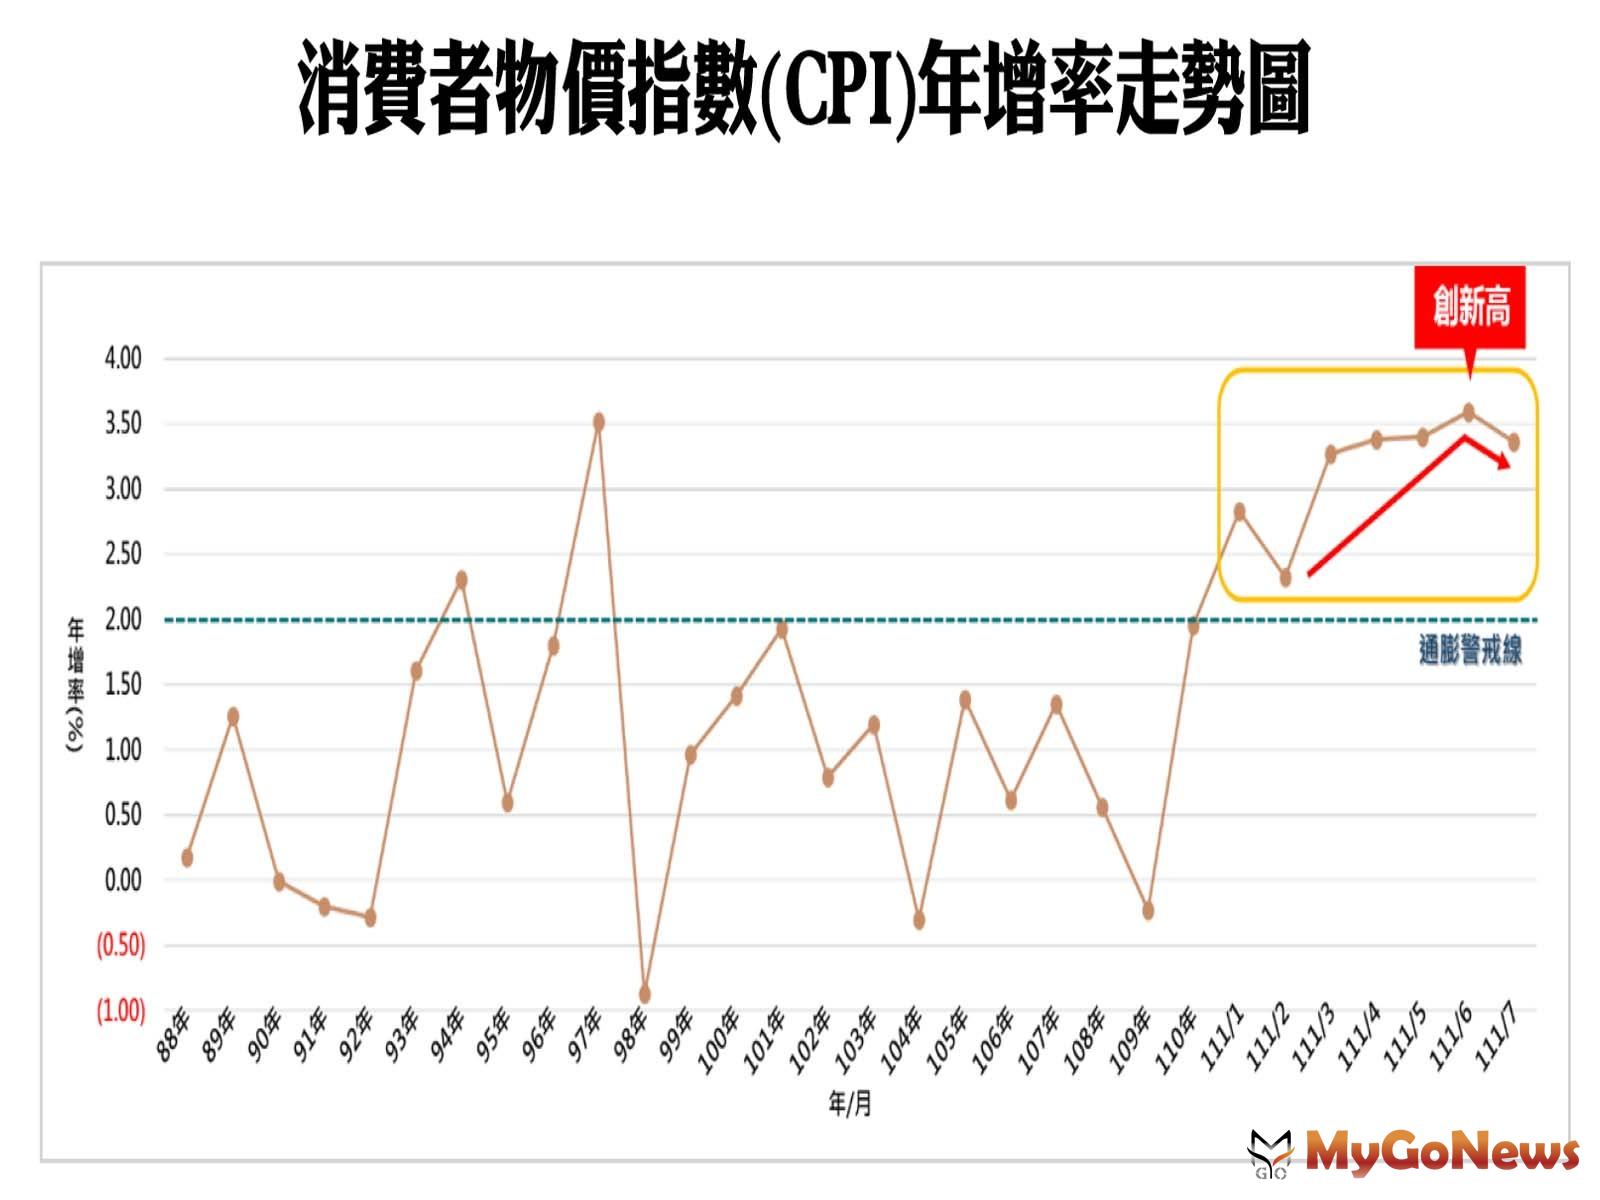 消費者物價指數(CPI)年增率走勢圖 MyGoNews房地產新聞 趨勢報導